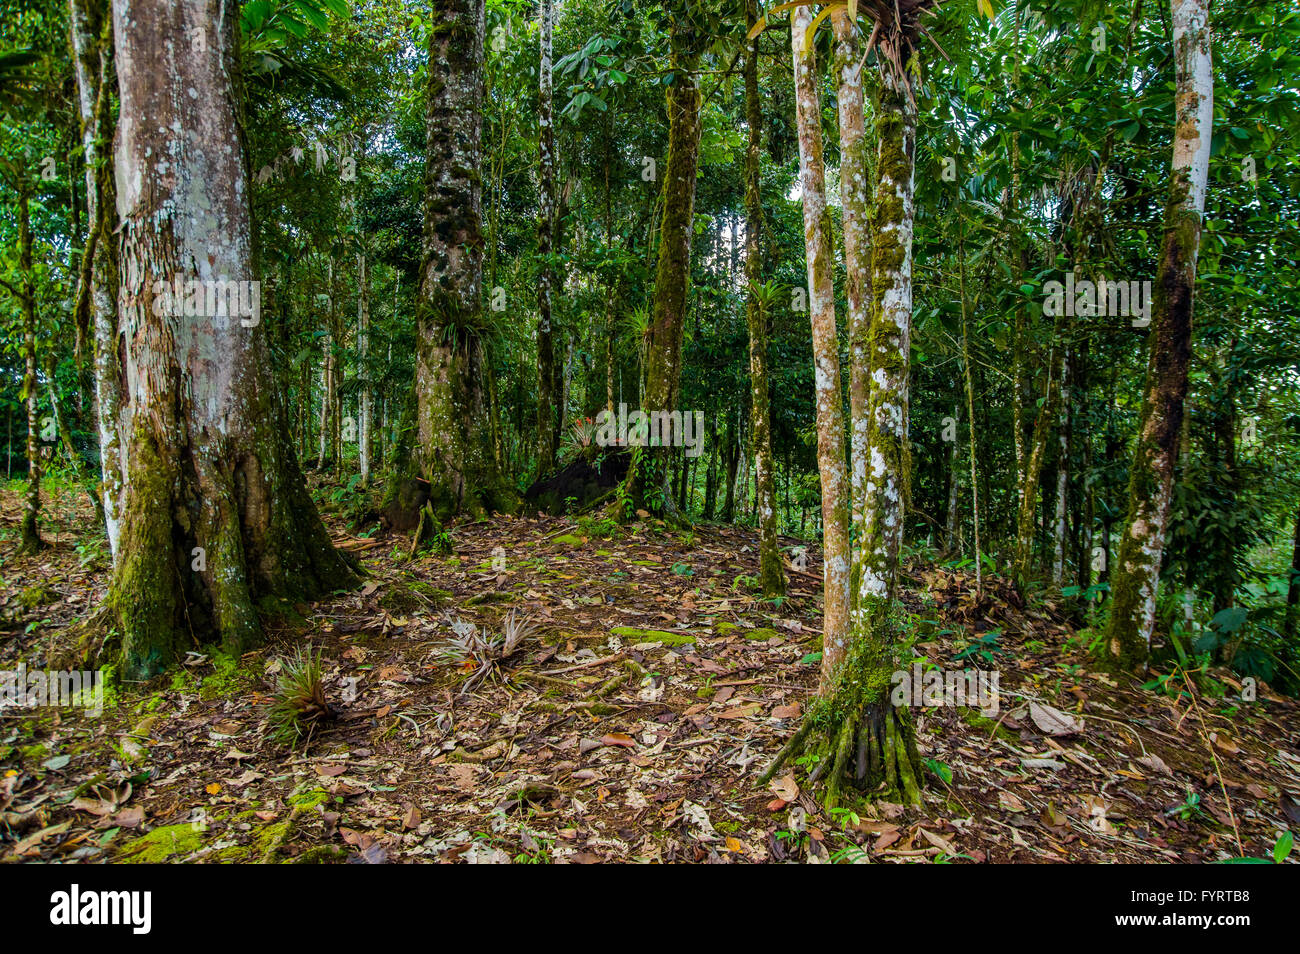 Tolles Foto von typischen Amazonas Dschungel Waldvegetation, große grüne Details und Kontraste Stockfoto